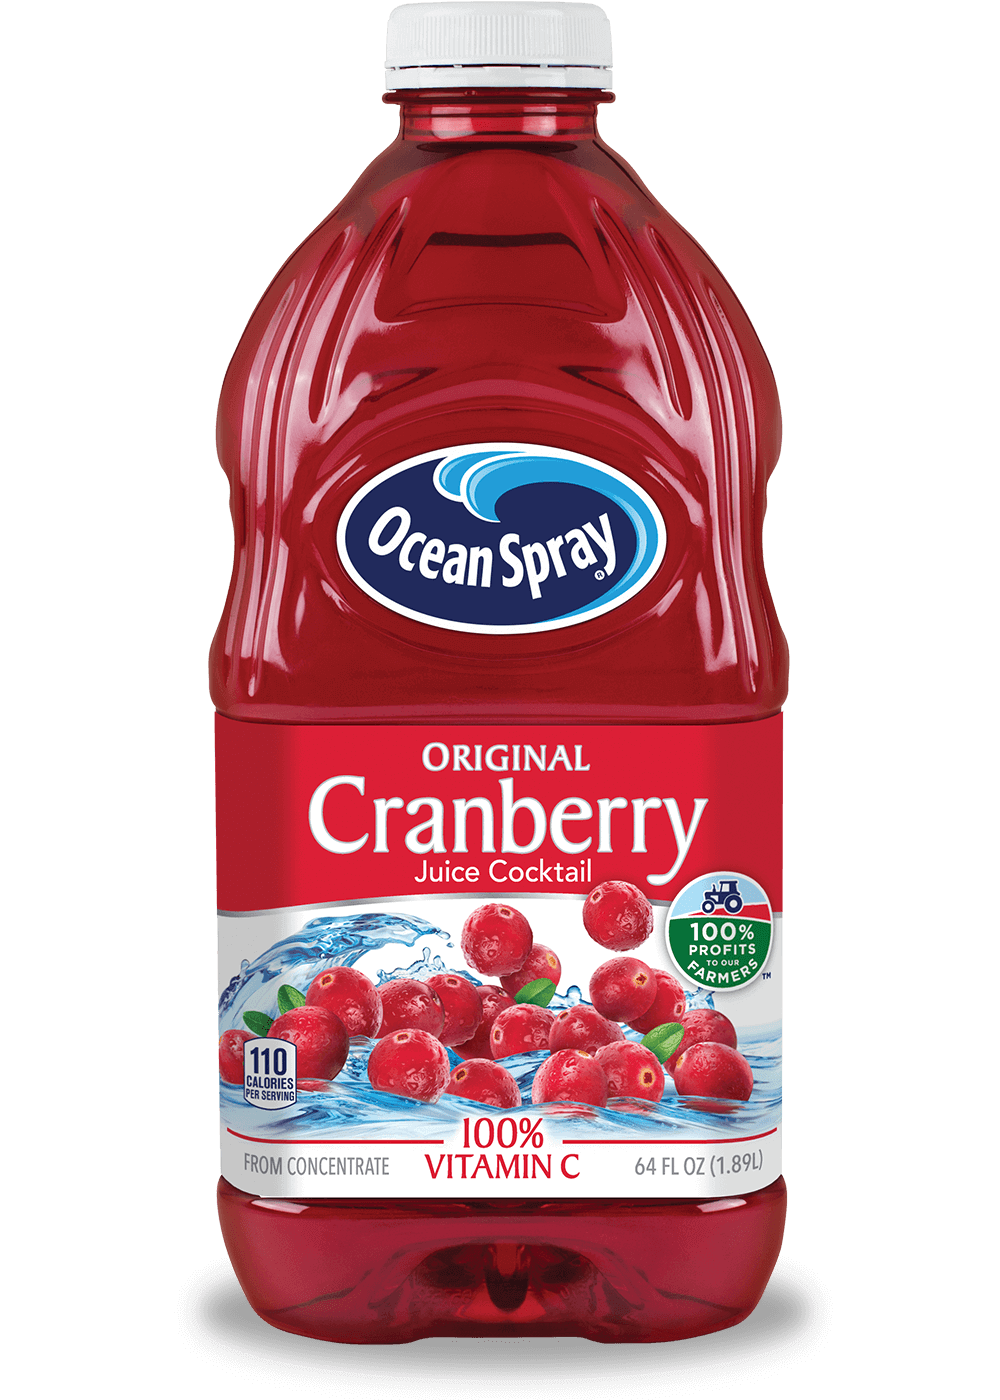 bebida-de-cranberry-ocean-spray